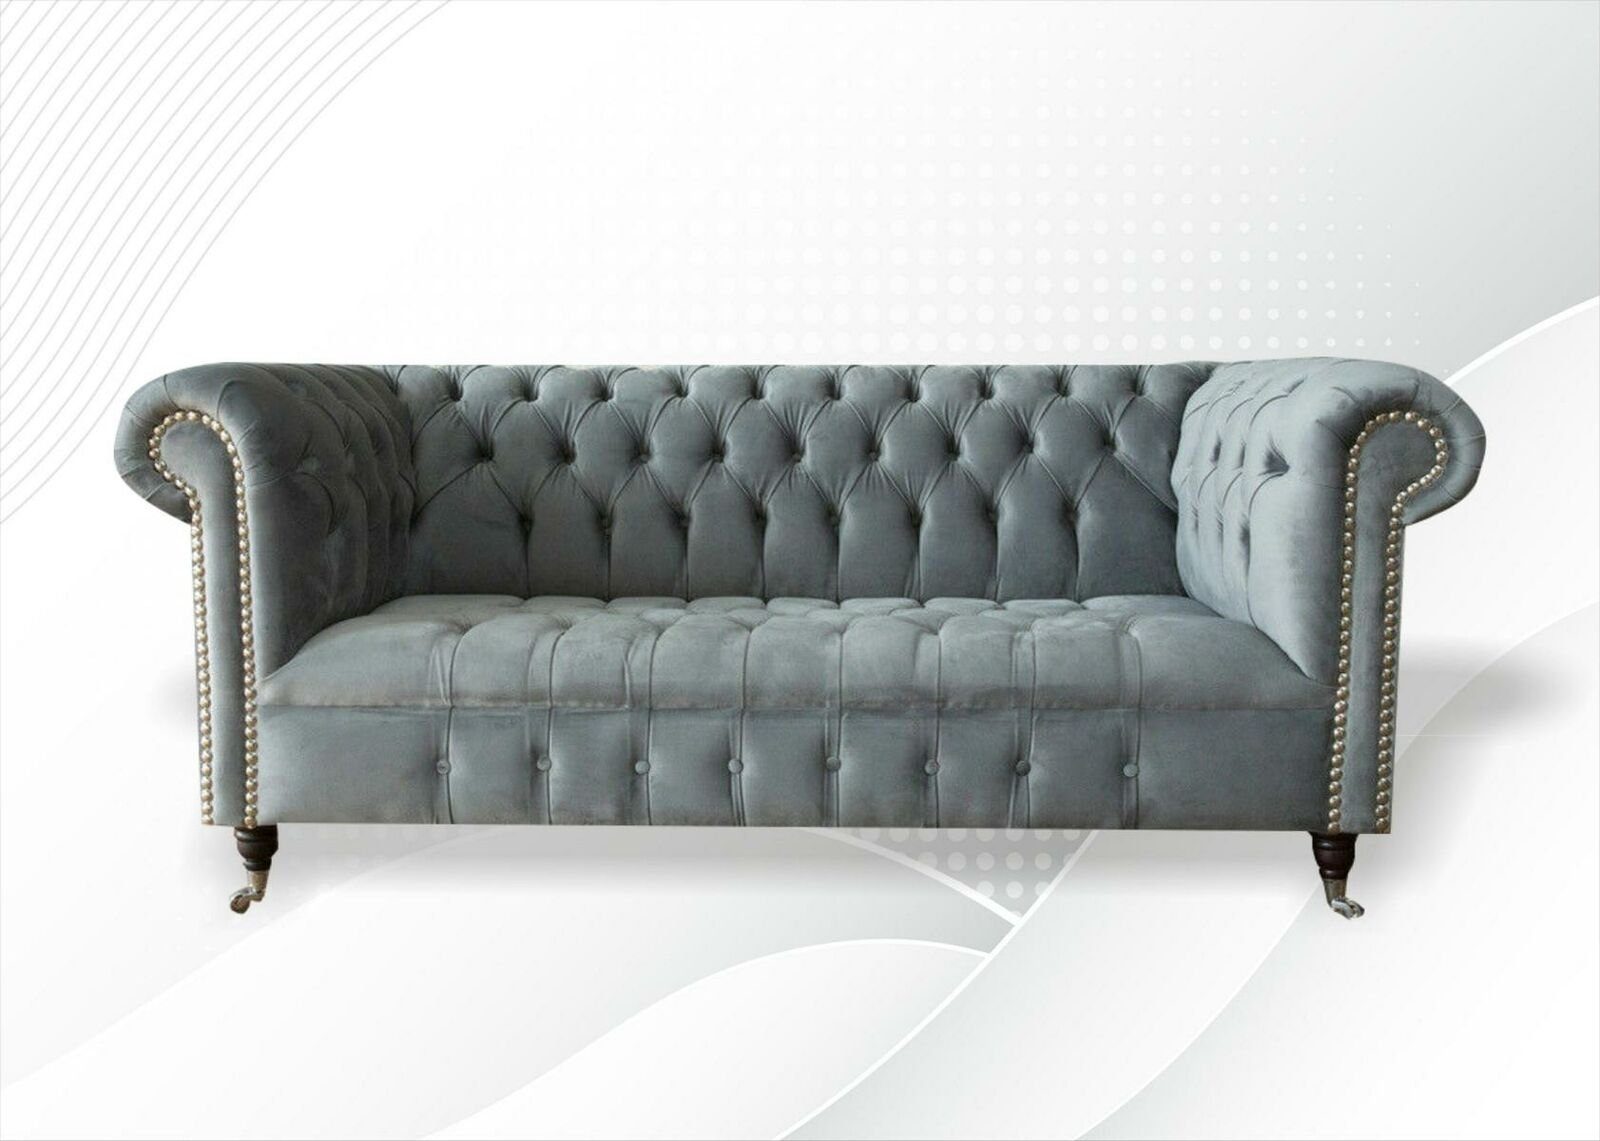 JVmoebel Chesterfield-Sofa, Neu Textil Graue Couchen Wohnzimmer Modern Kreative Design Möbel Chesterfield